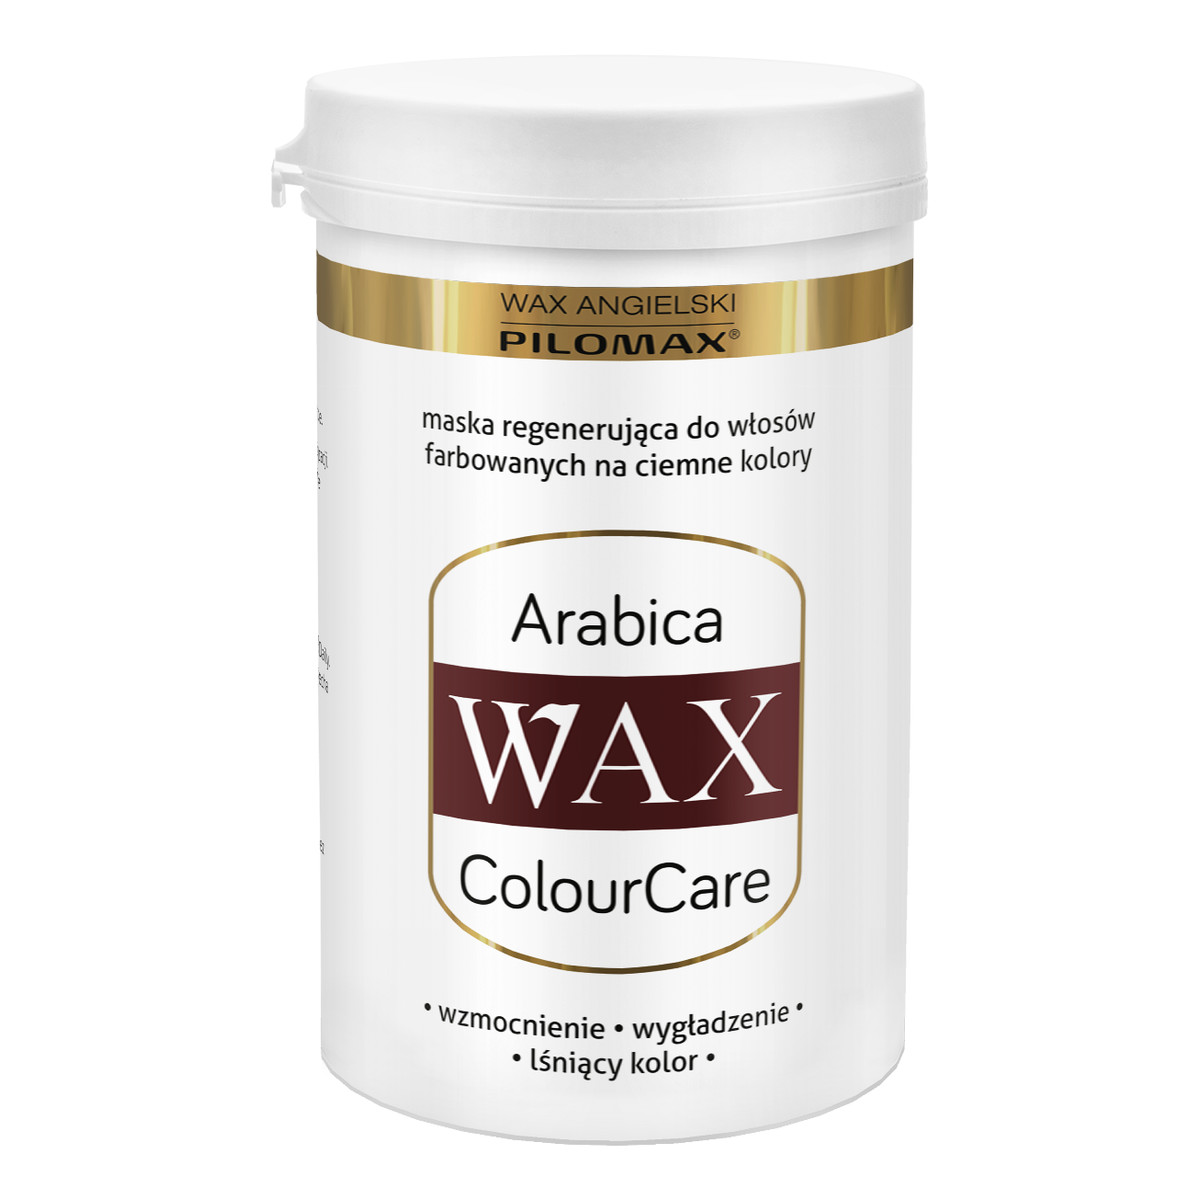 Pilomax Wax Arabica Colour Care Maska Regenerująca Do Włosów Farbowanych Ciemnych 480ml